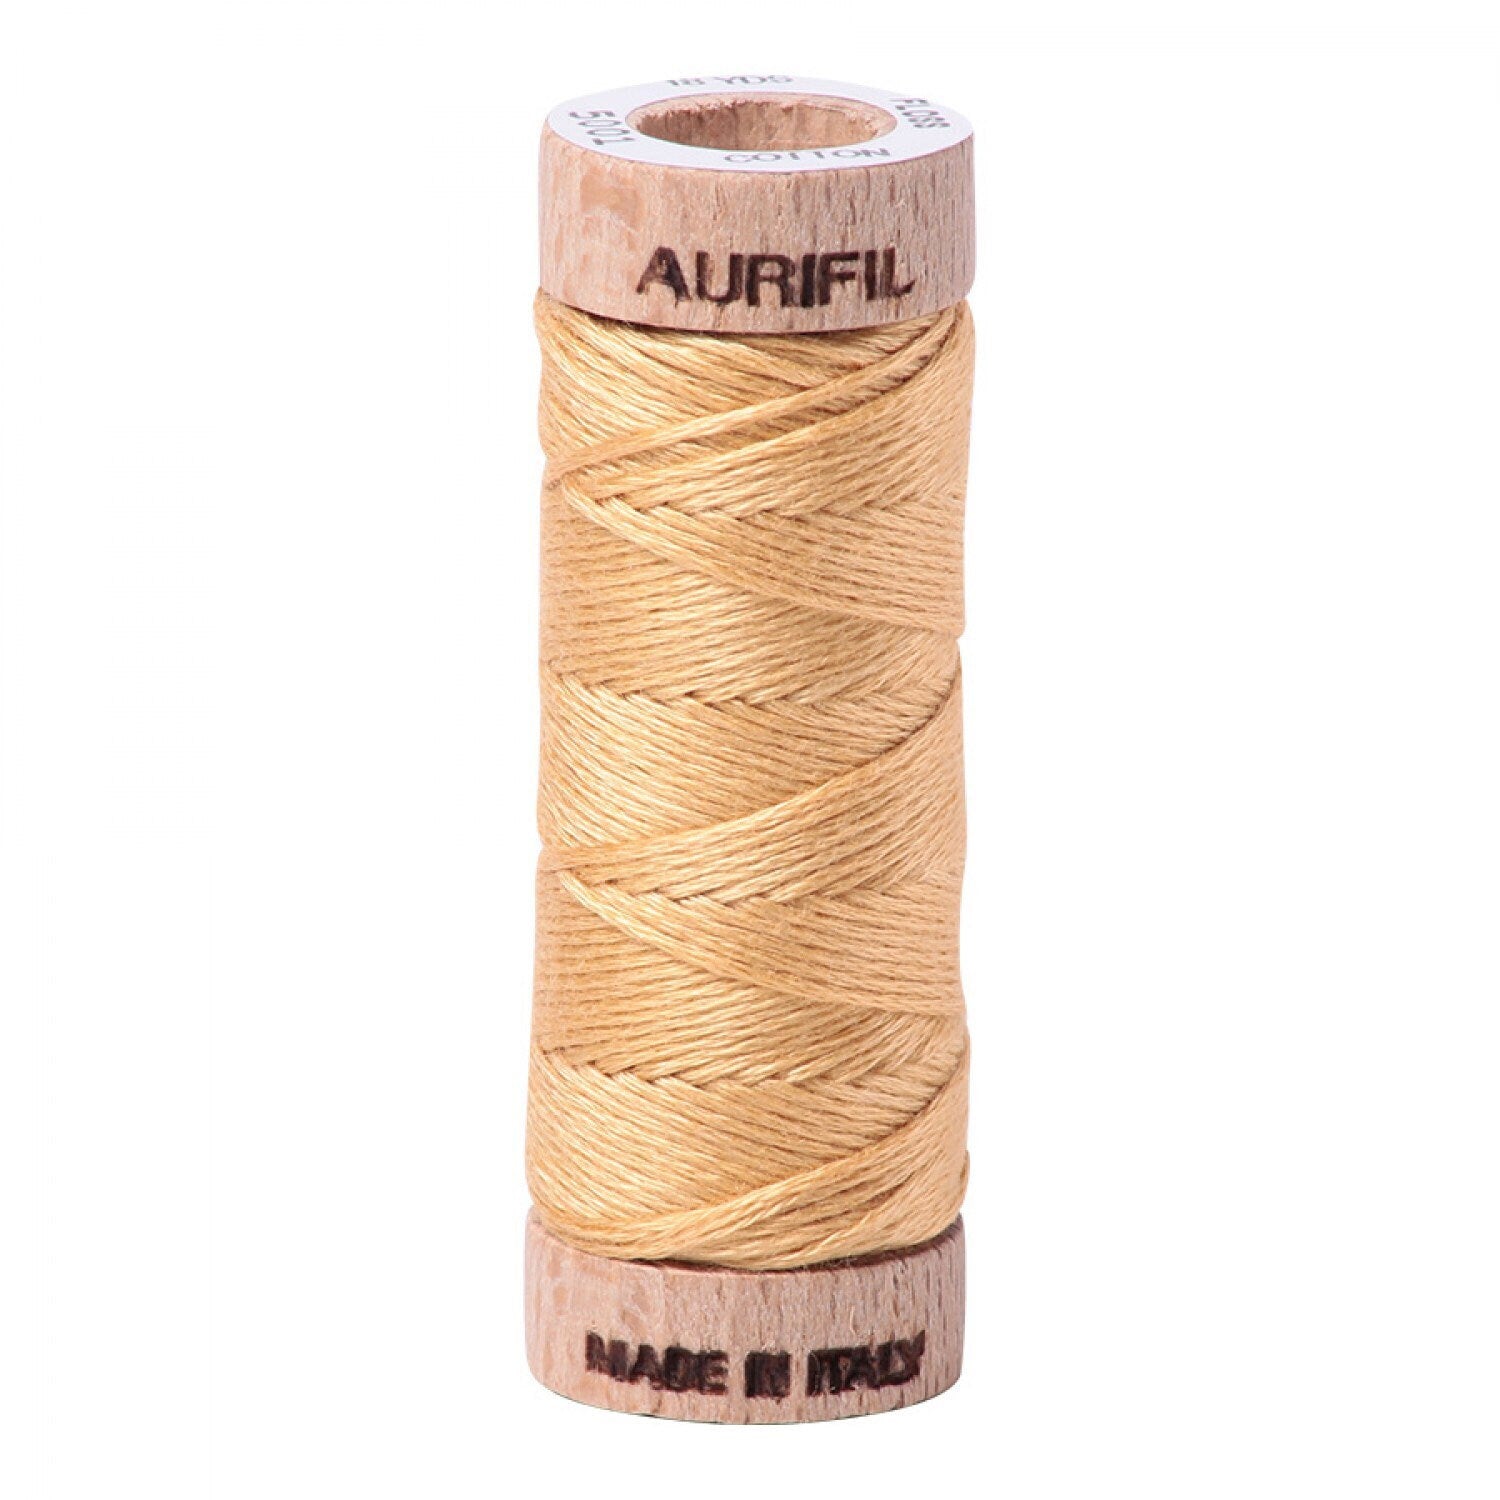 Ocher Yellow Aurifil Floss - 5001 - Aurifloss